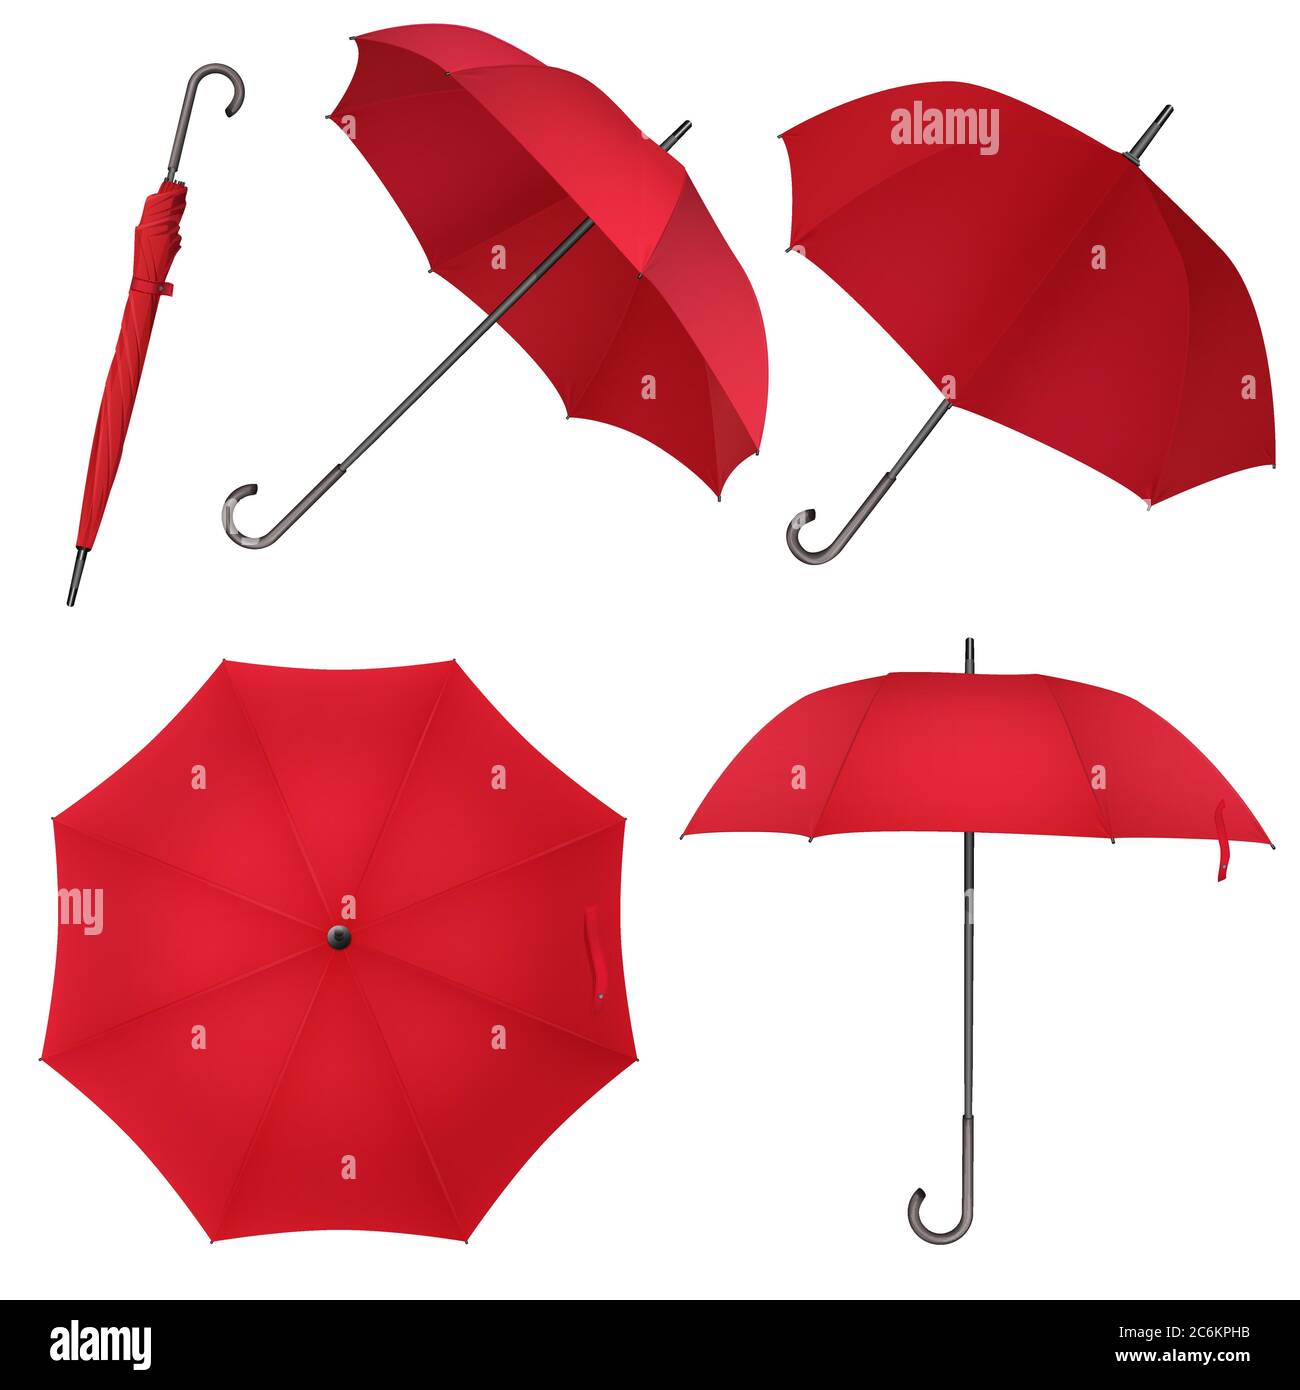 Roter, blank klassischer runder Regenschirm. Foto realistische Regenschirm  Vektor Illustration Stock-Vektorgrafik - Alamy